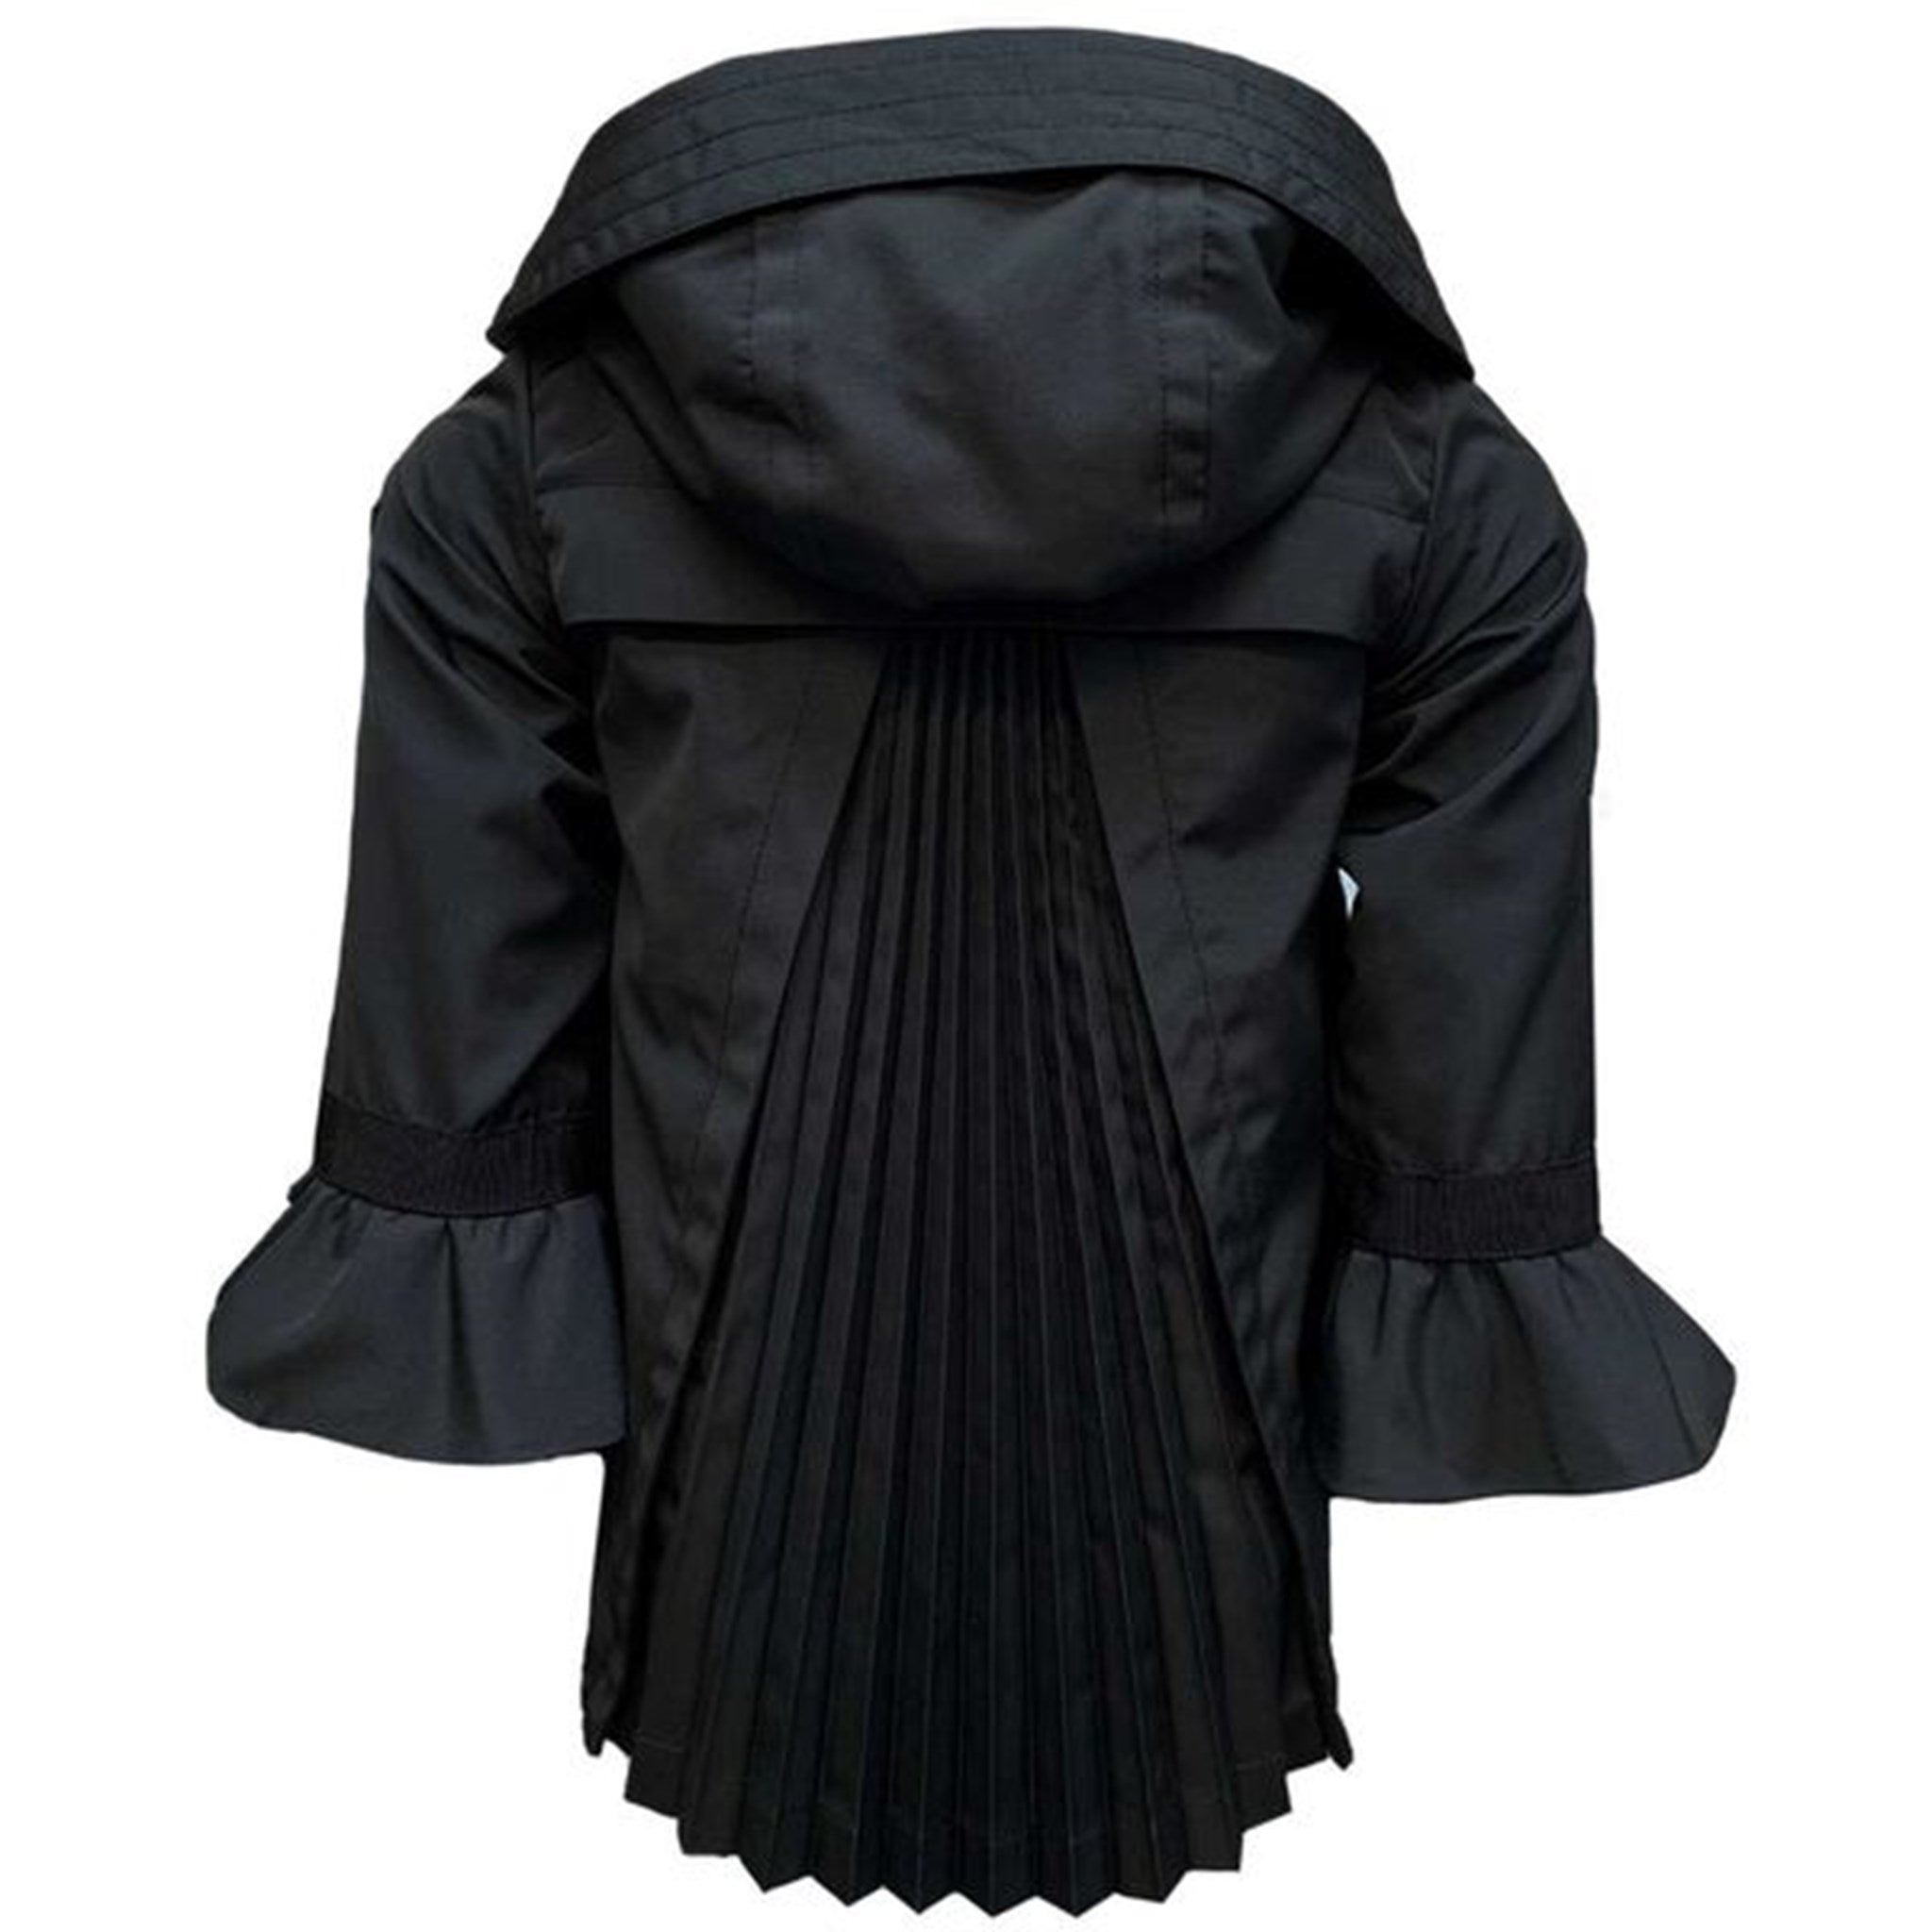 Moncler Athelas Giubbotto Jacket Black 2